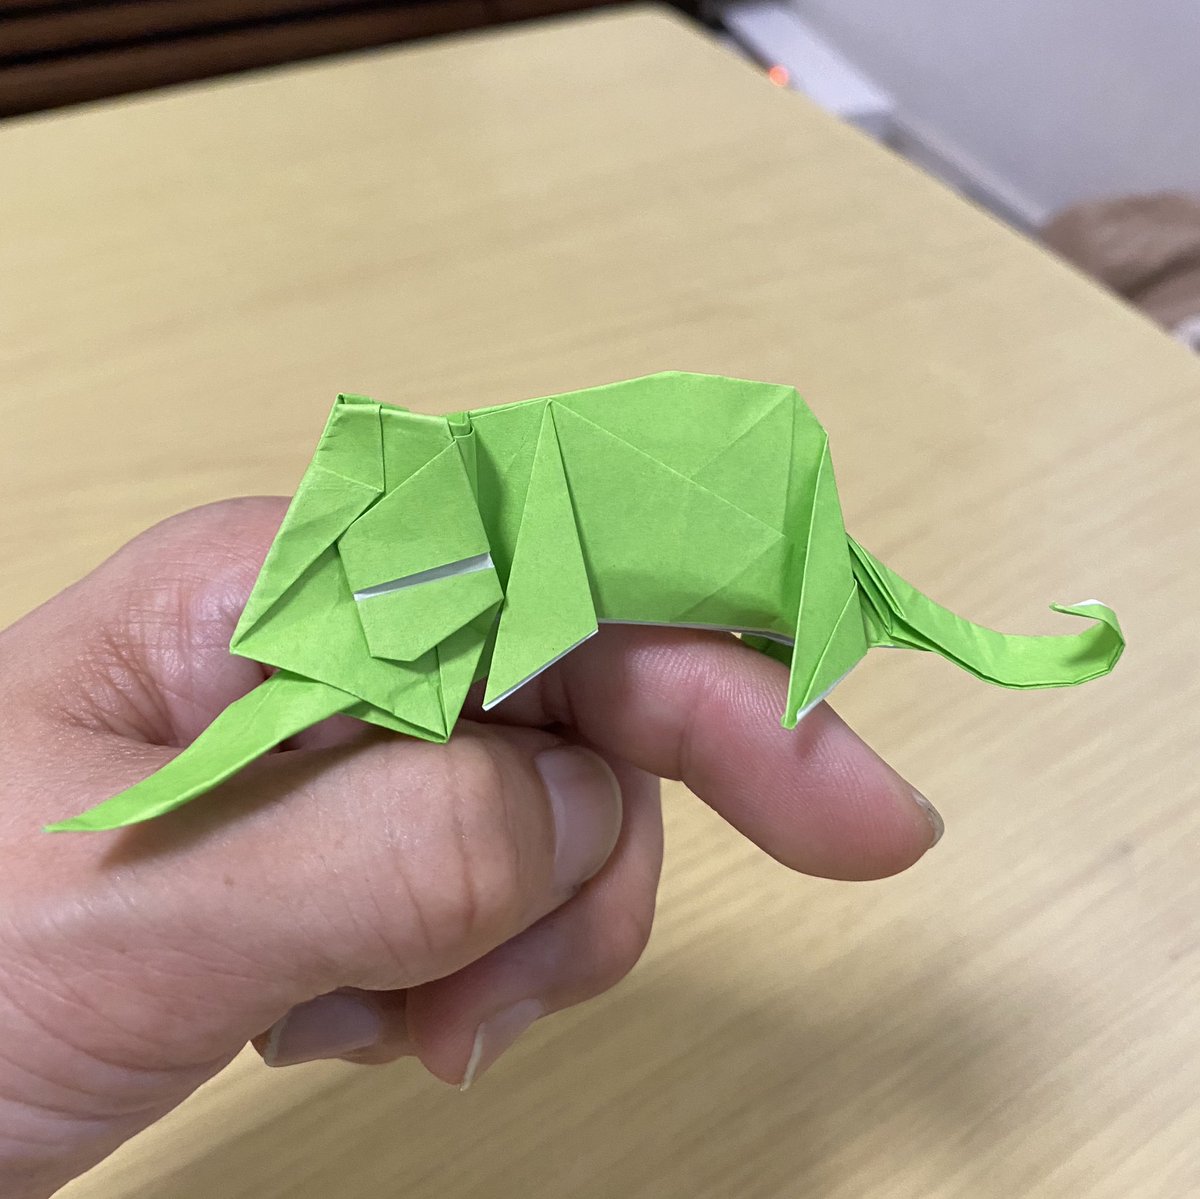 折り紙職人 V Twitter 手乗りカメレオン 一匹柴犬さん Kobashi6 のyoutubeチャンネル 一匹柴犬 Origami より 15 折り紙使用 これ普通にユル可愛い 一匹柴犬さんのオバケの展開図折りはあきらめました 折り紙作品 一匹柴犬さん カメレオン 一